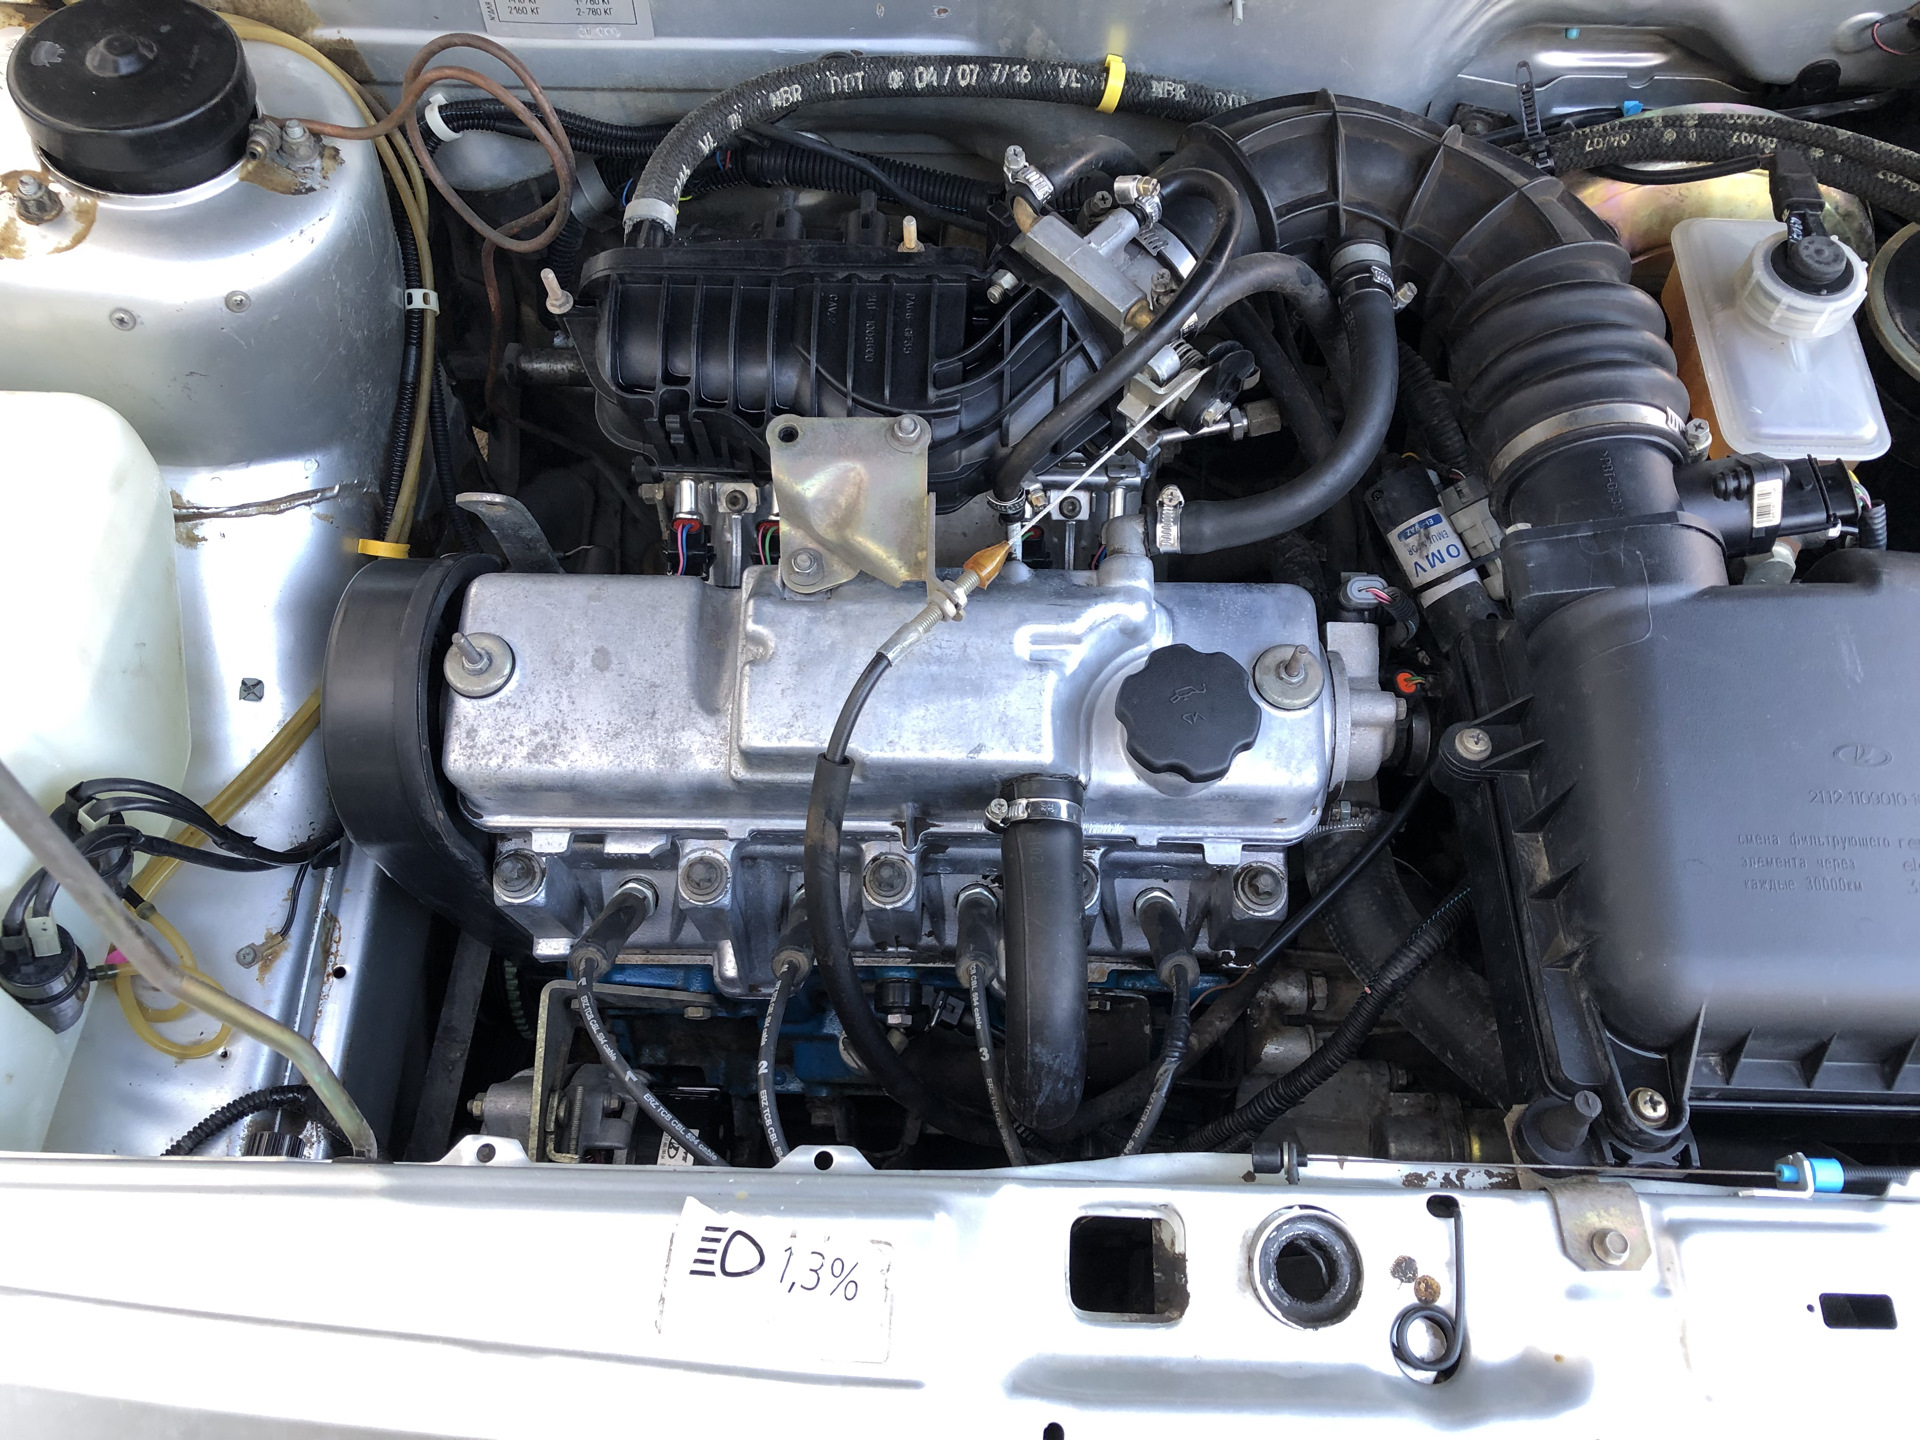 8 клапанный двигатель 2115. ВАЗ 2114 1.6 8кл мотор. ВАЗ 2114 двигатель 1.6. 8кл мотор ВАЗ 2114. Движок 1.5 ВАЗ 2114.